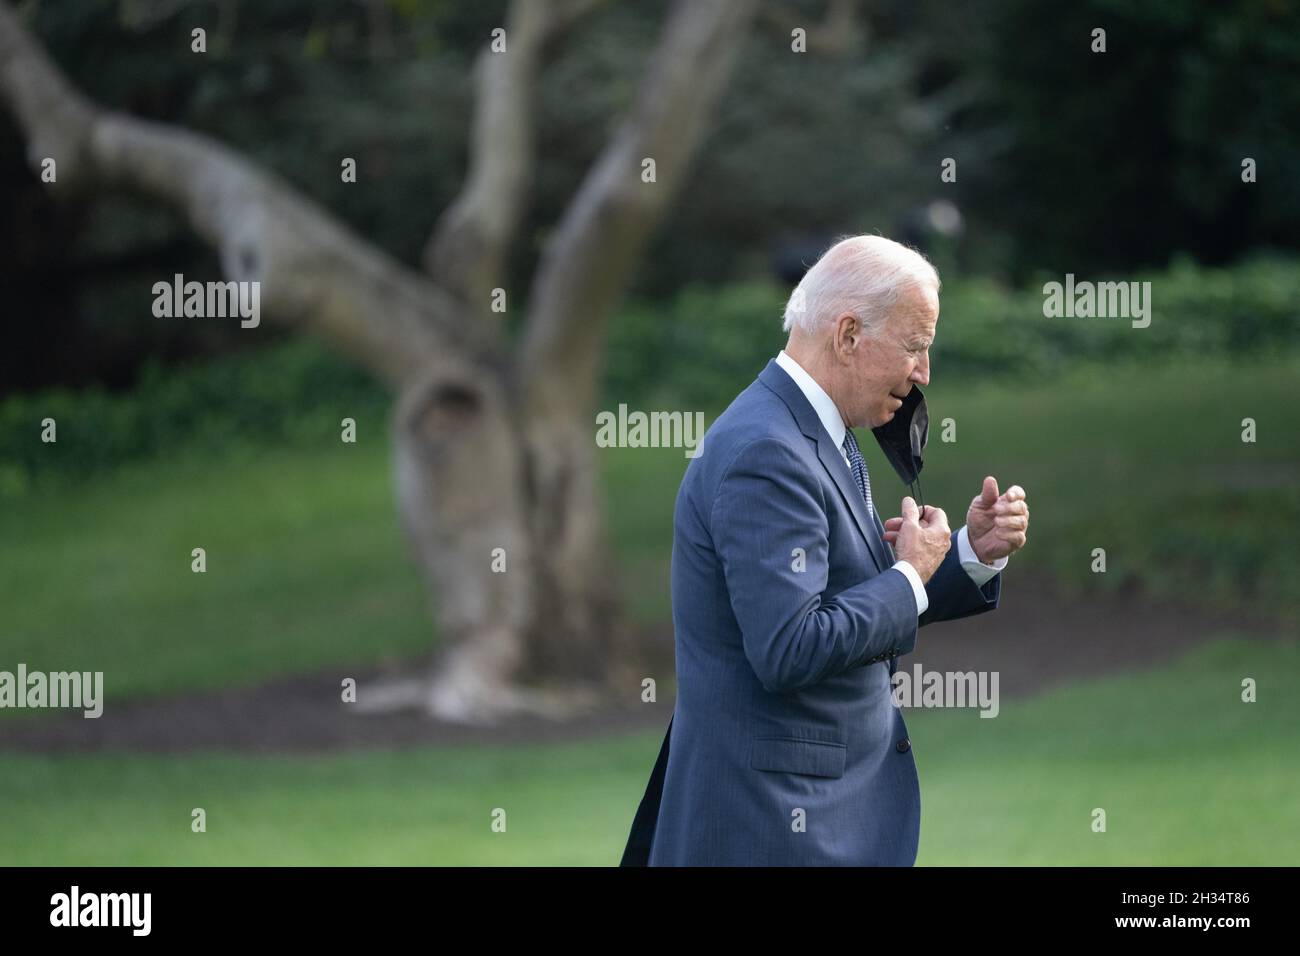 Le président des États-Unis Joe Biden revient à la Maison Blanche à Washington, DC, après avoir pris la parole lors d'événements sur son programme mieux construire le dos, le 25 octobre 2021.Crédit: Chris Kleponis/Pool via CNP/MediaPunch Banque D'Images